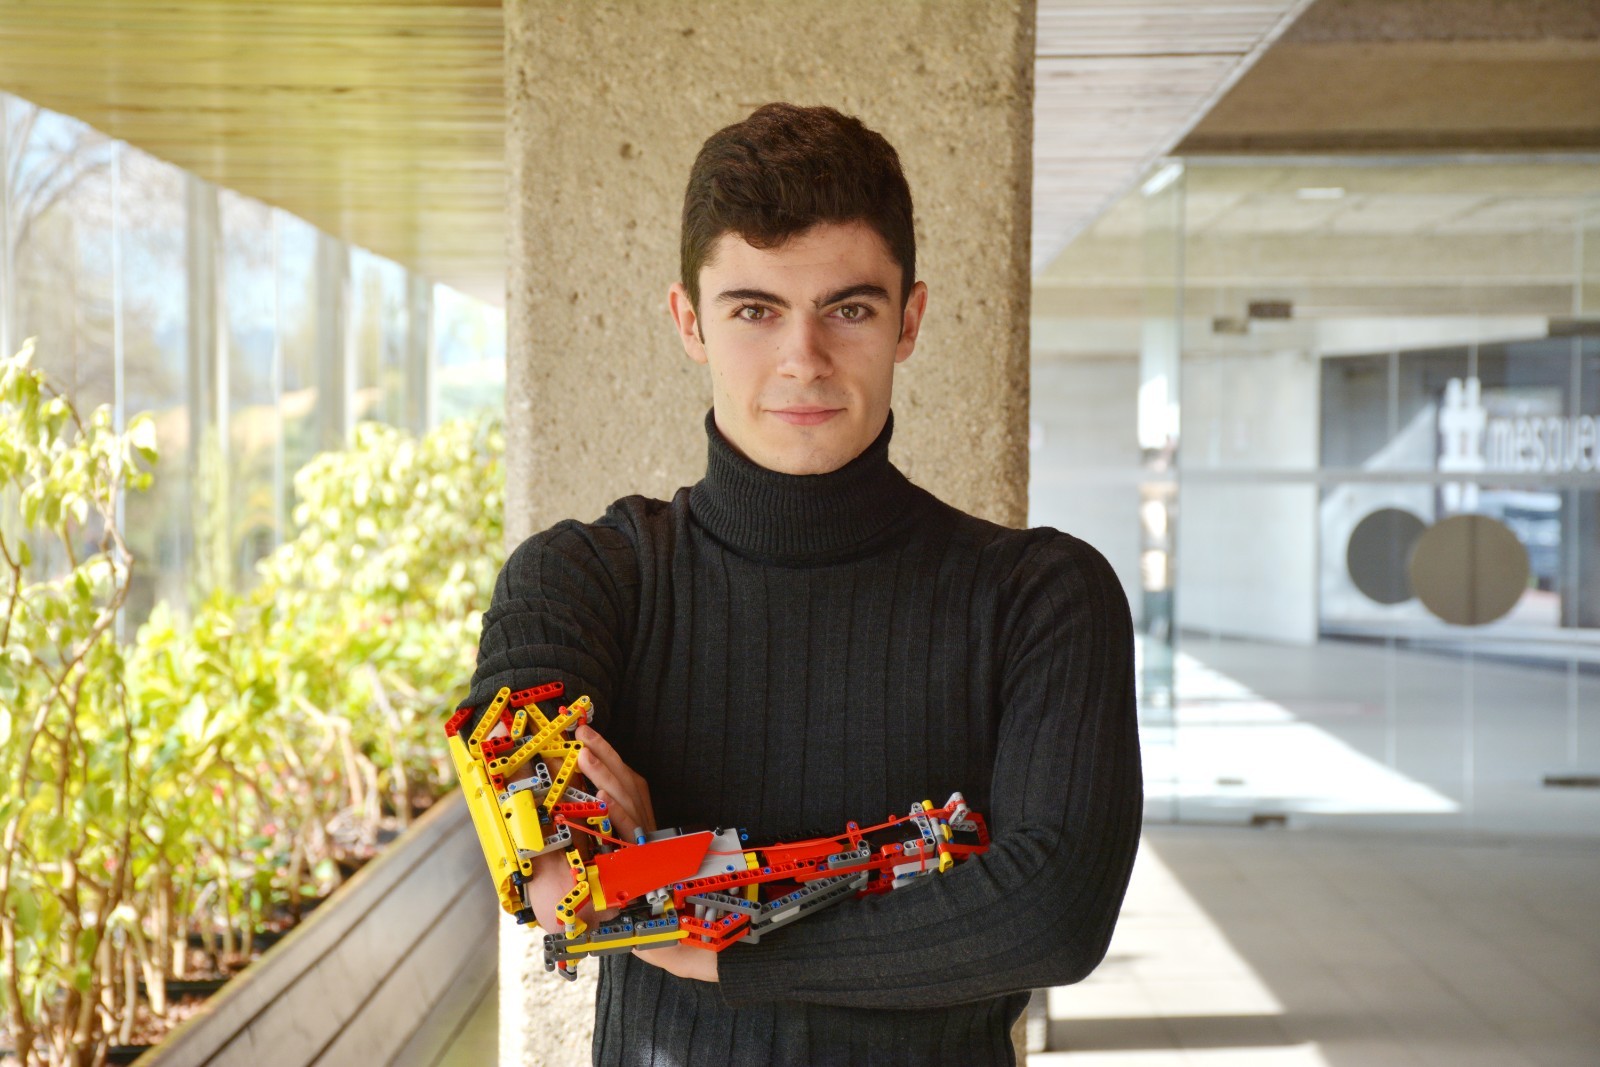 David Aguilar construiu 4 próteses com blocos de Lego  (Foto: Pau Fabregat/ National Géographic)